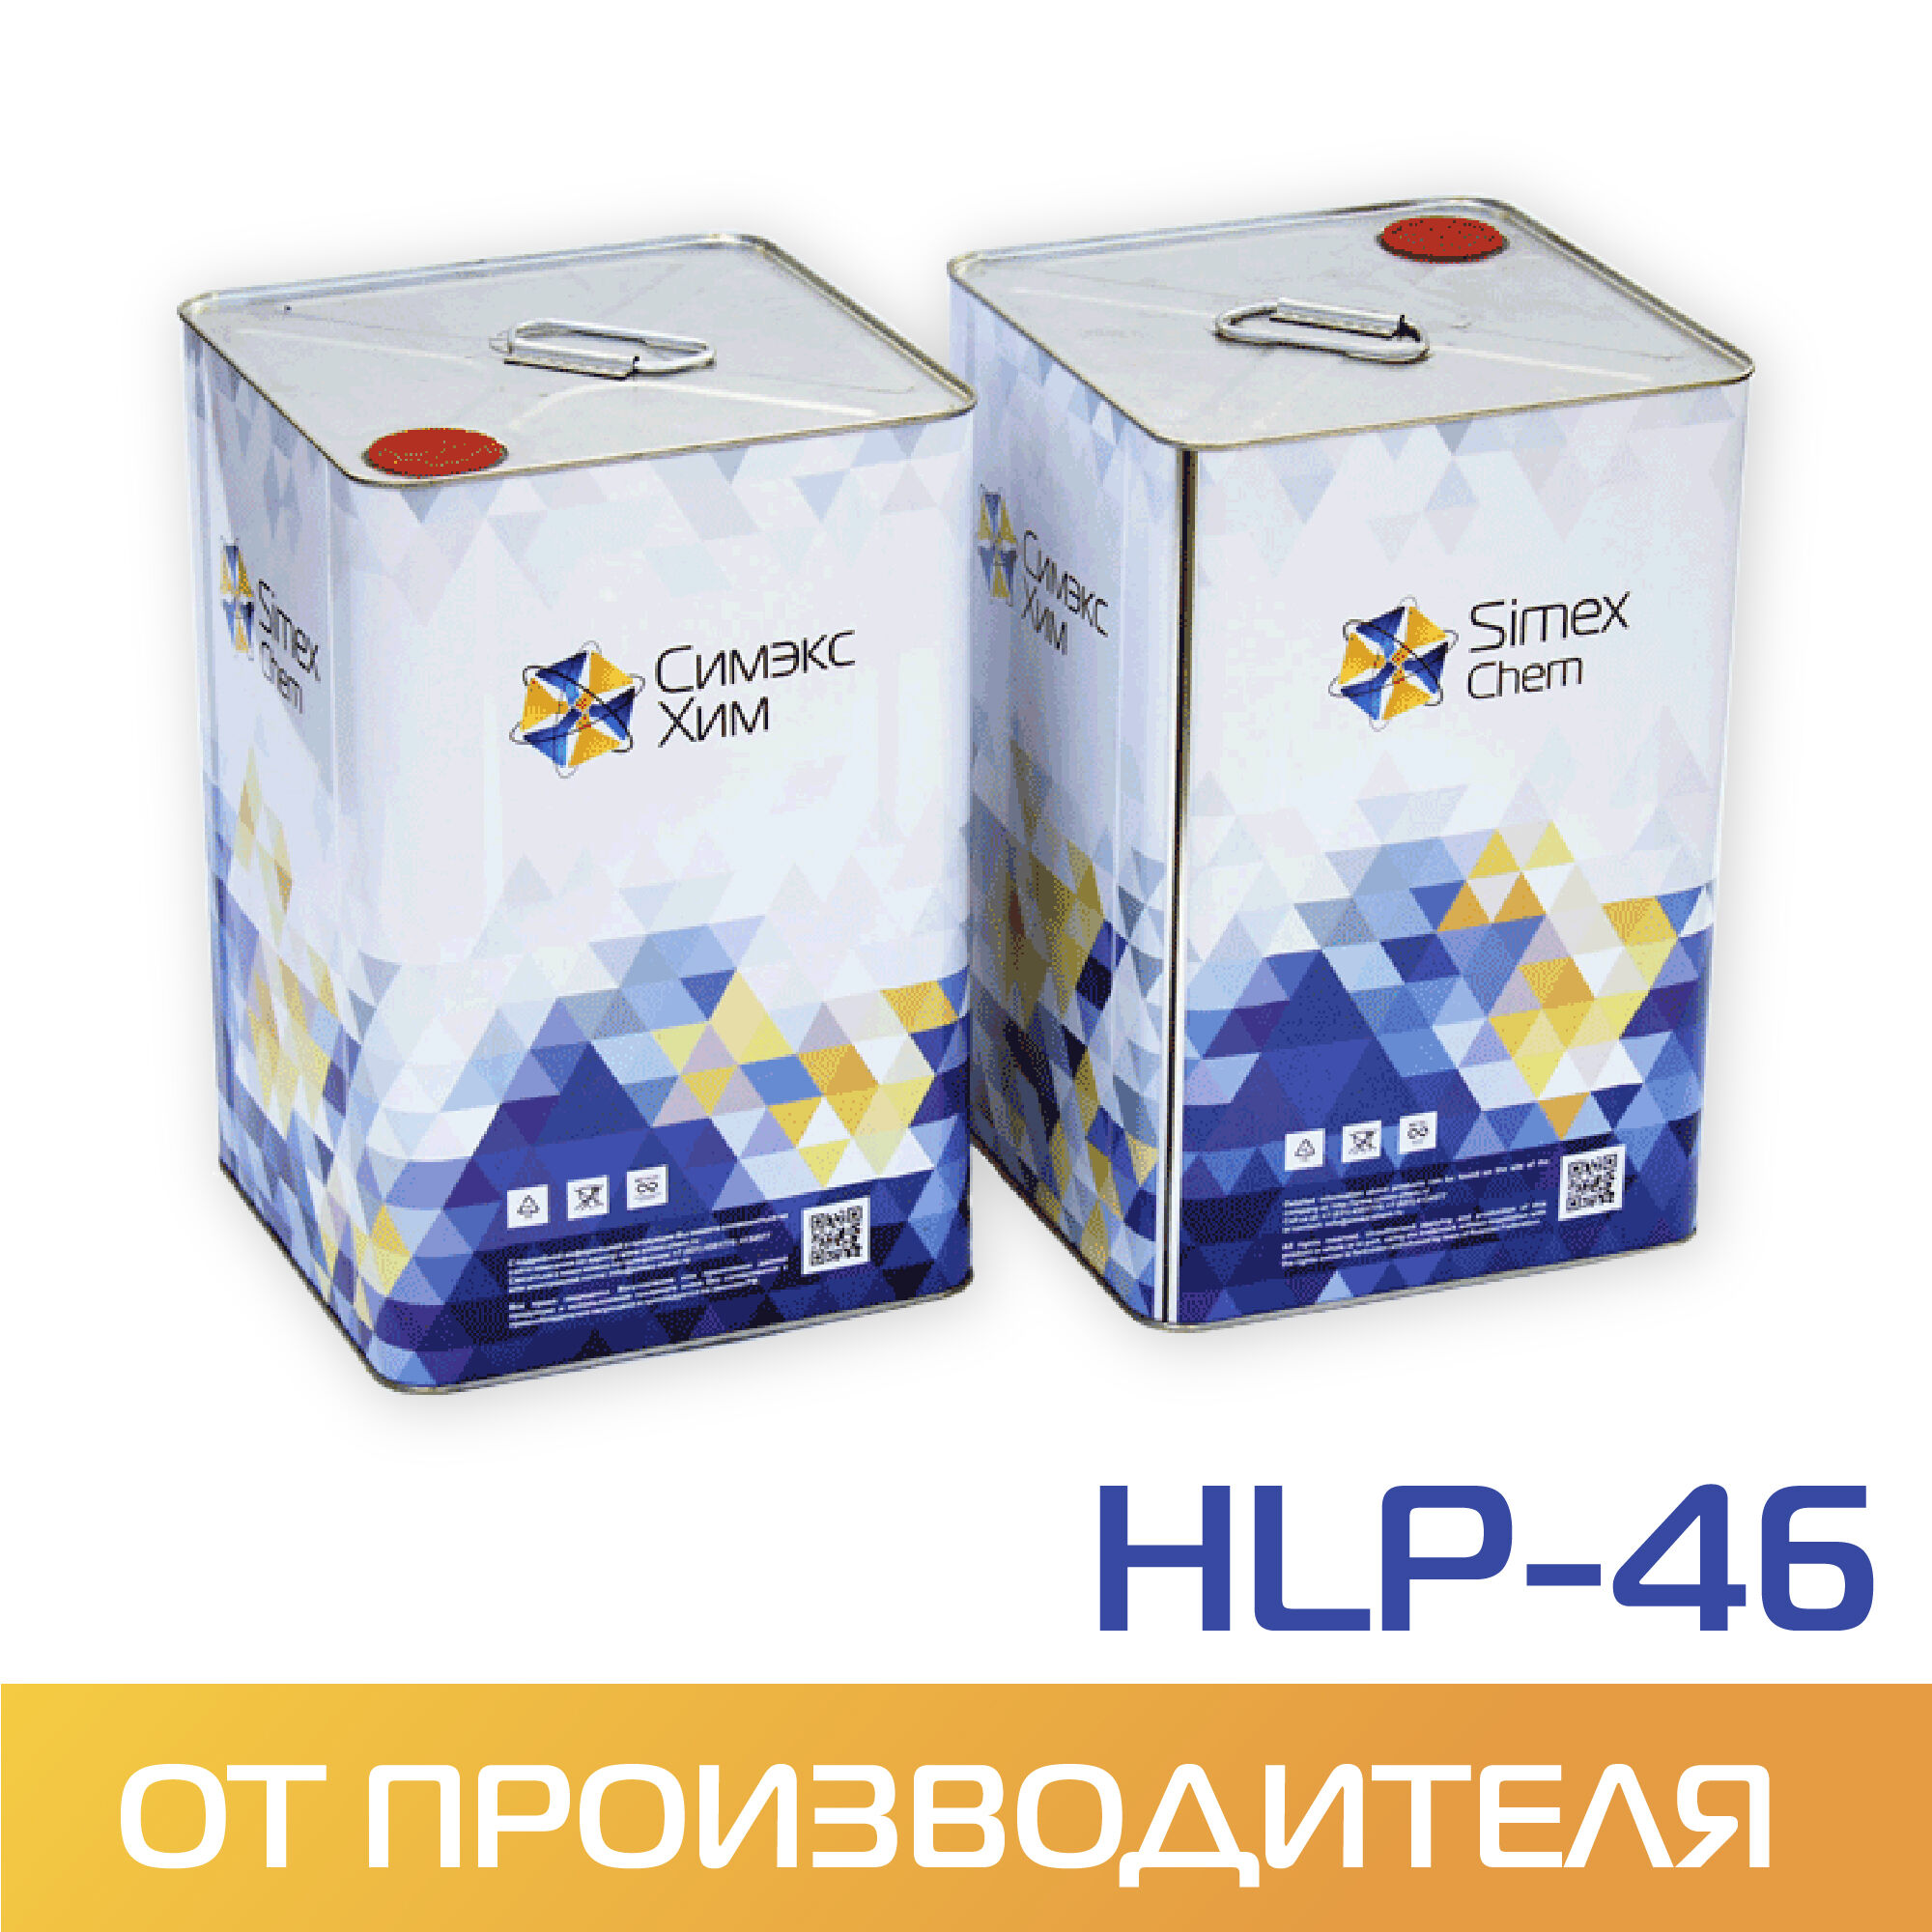 Масло для гидравлических систем HLP-46 15 кг